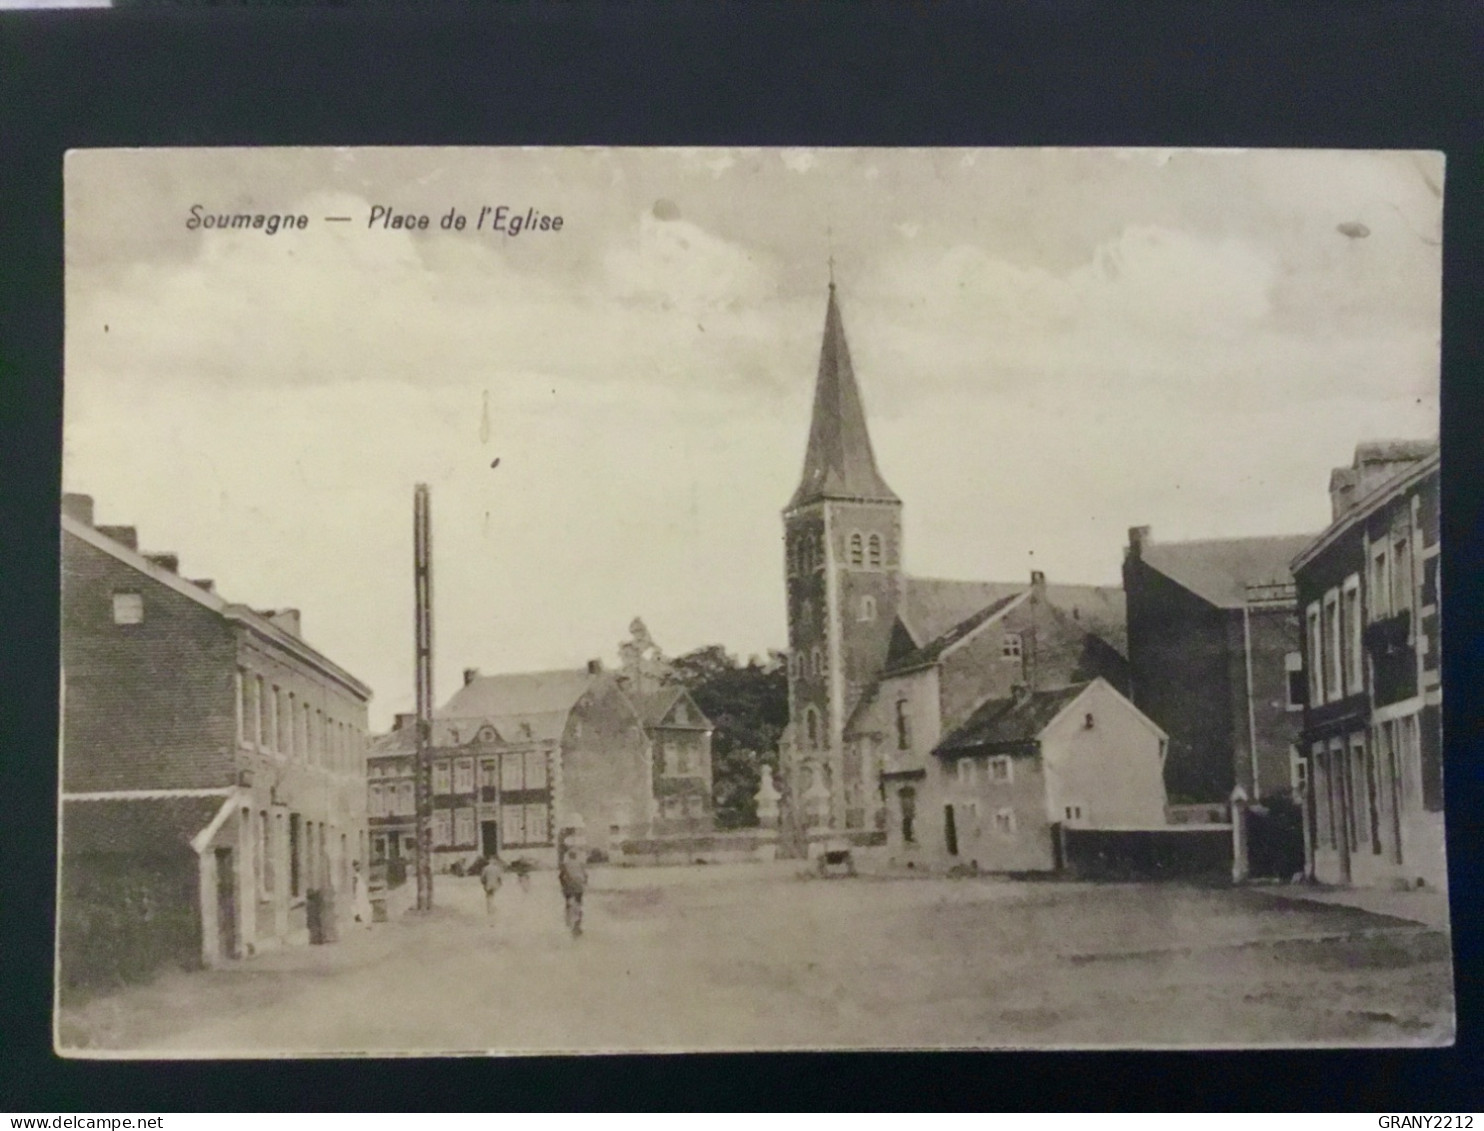 SOUMAGNE «  PLACE DE L’ÉGLISE «  PANORAMA,ANIMÉE.1920. - Soumagne